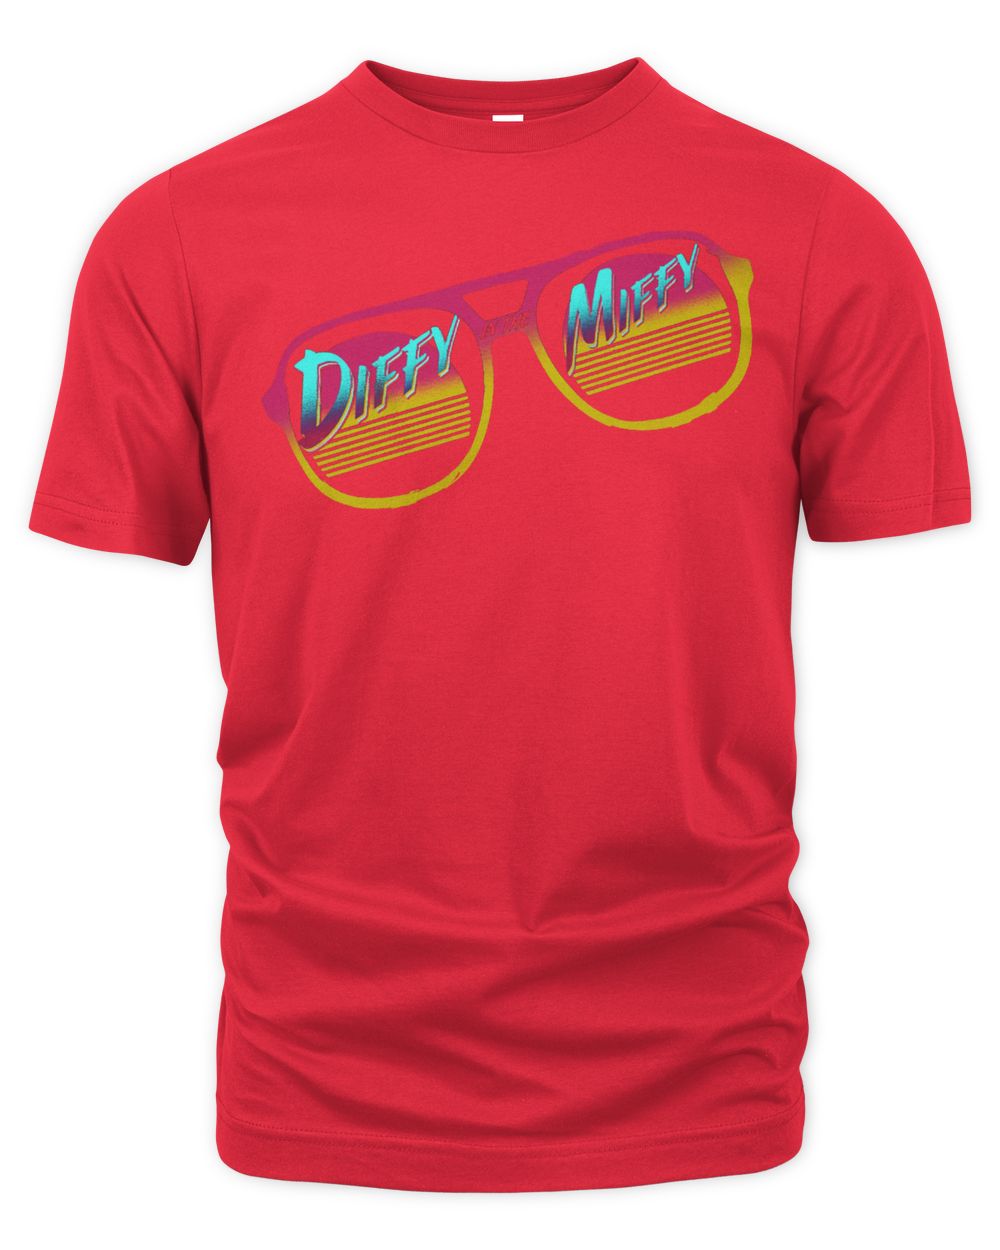 Tyler1 Merch Miffy Retro Shirt Unisex Premium T-Shirt red 